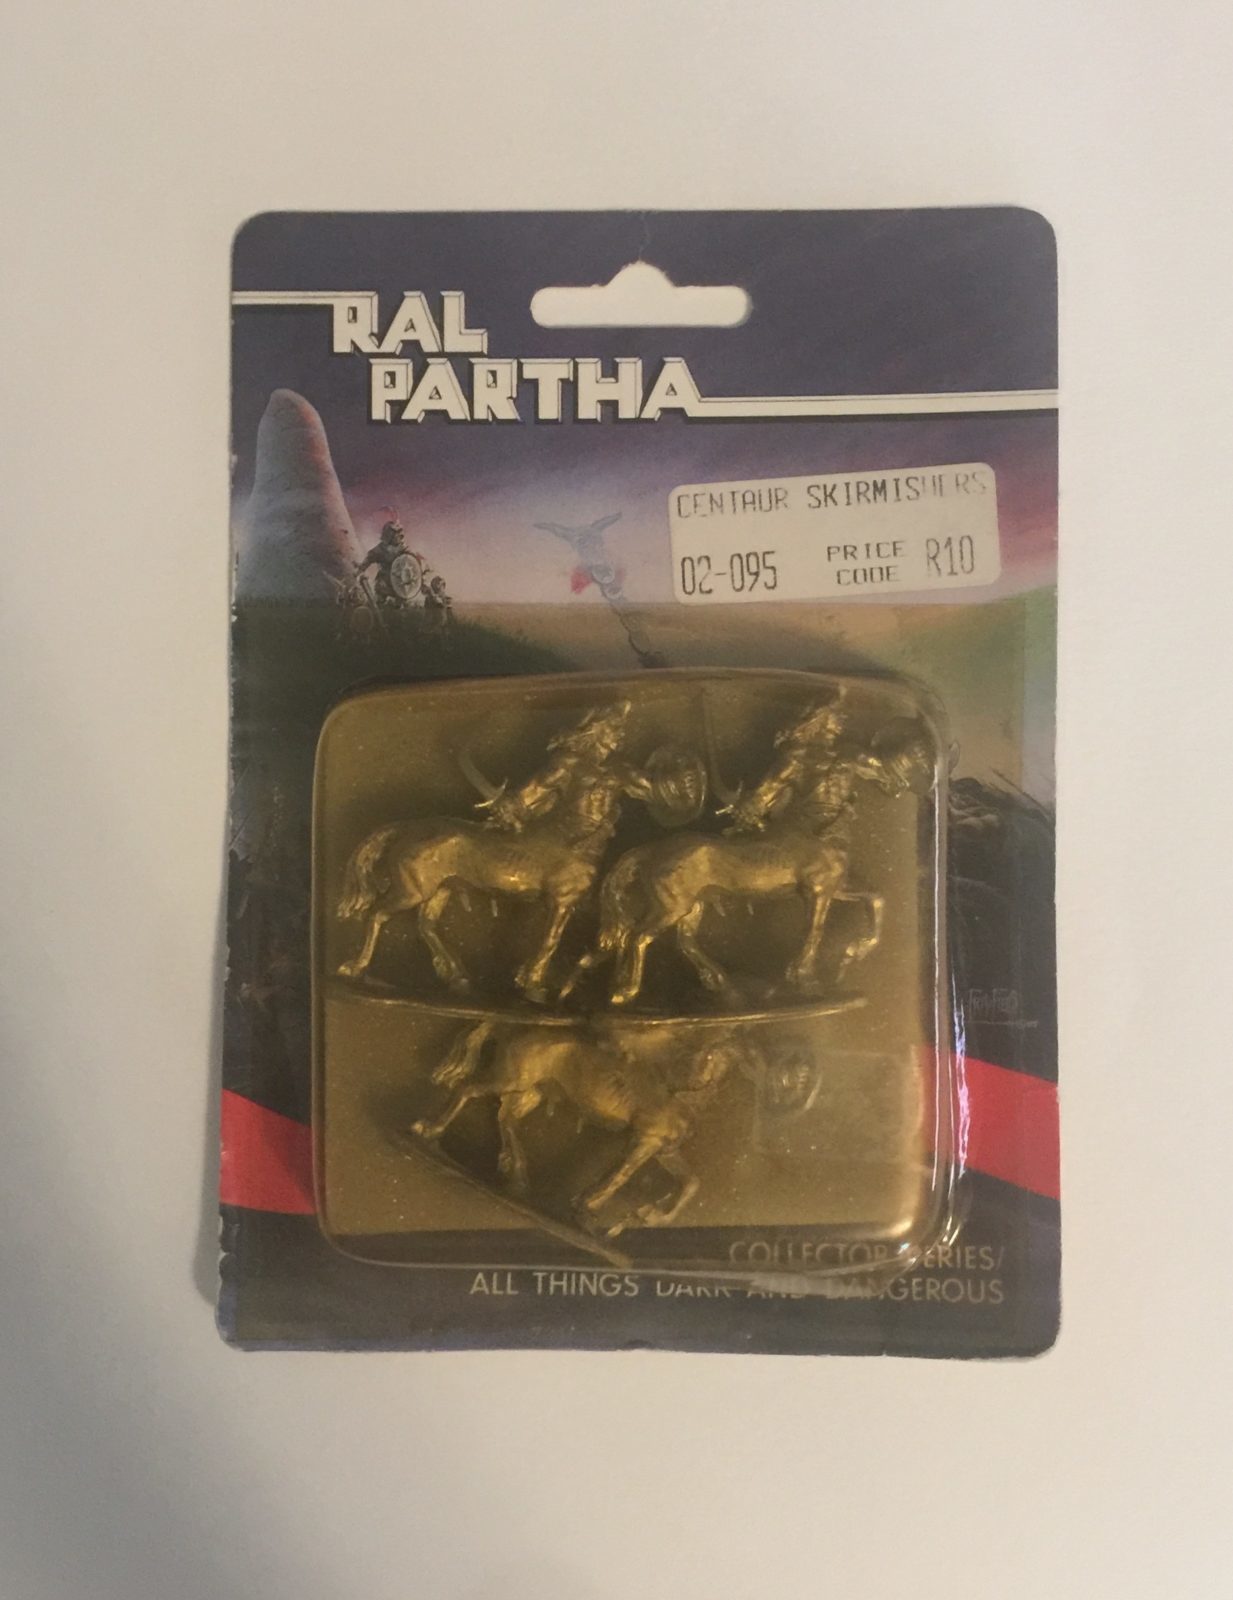 Ral Partha Centaur Skirmishers